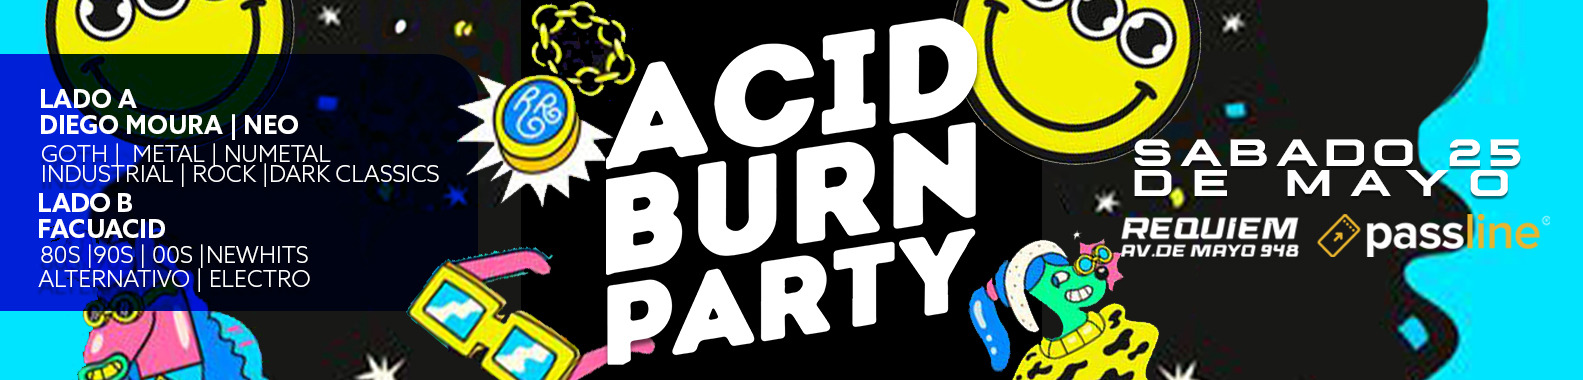 Sabado 25 | AcidburnParty (+18)